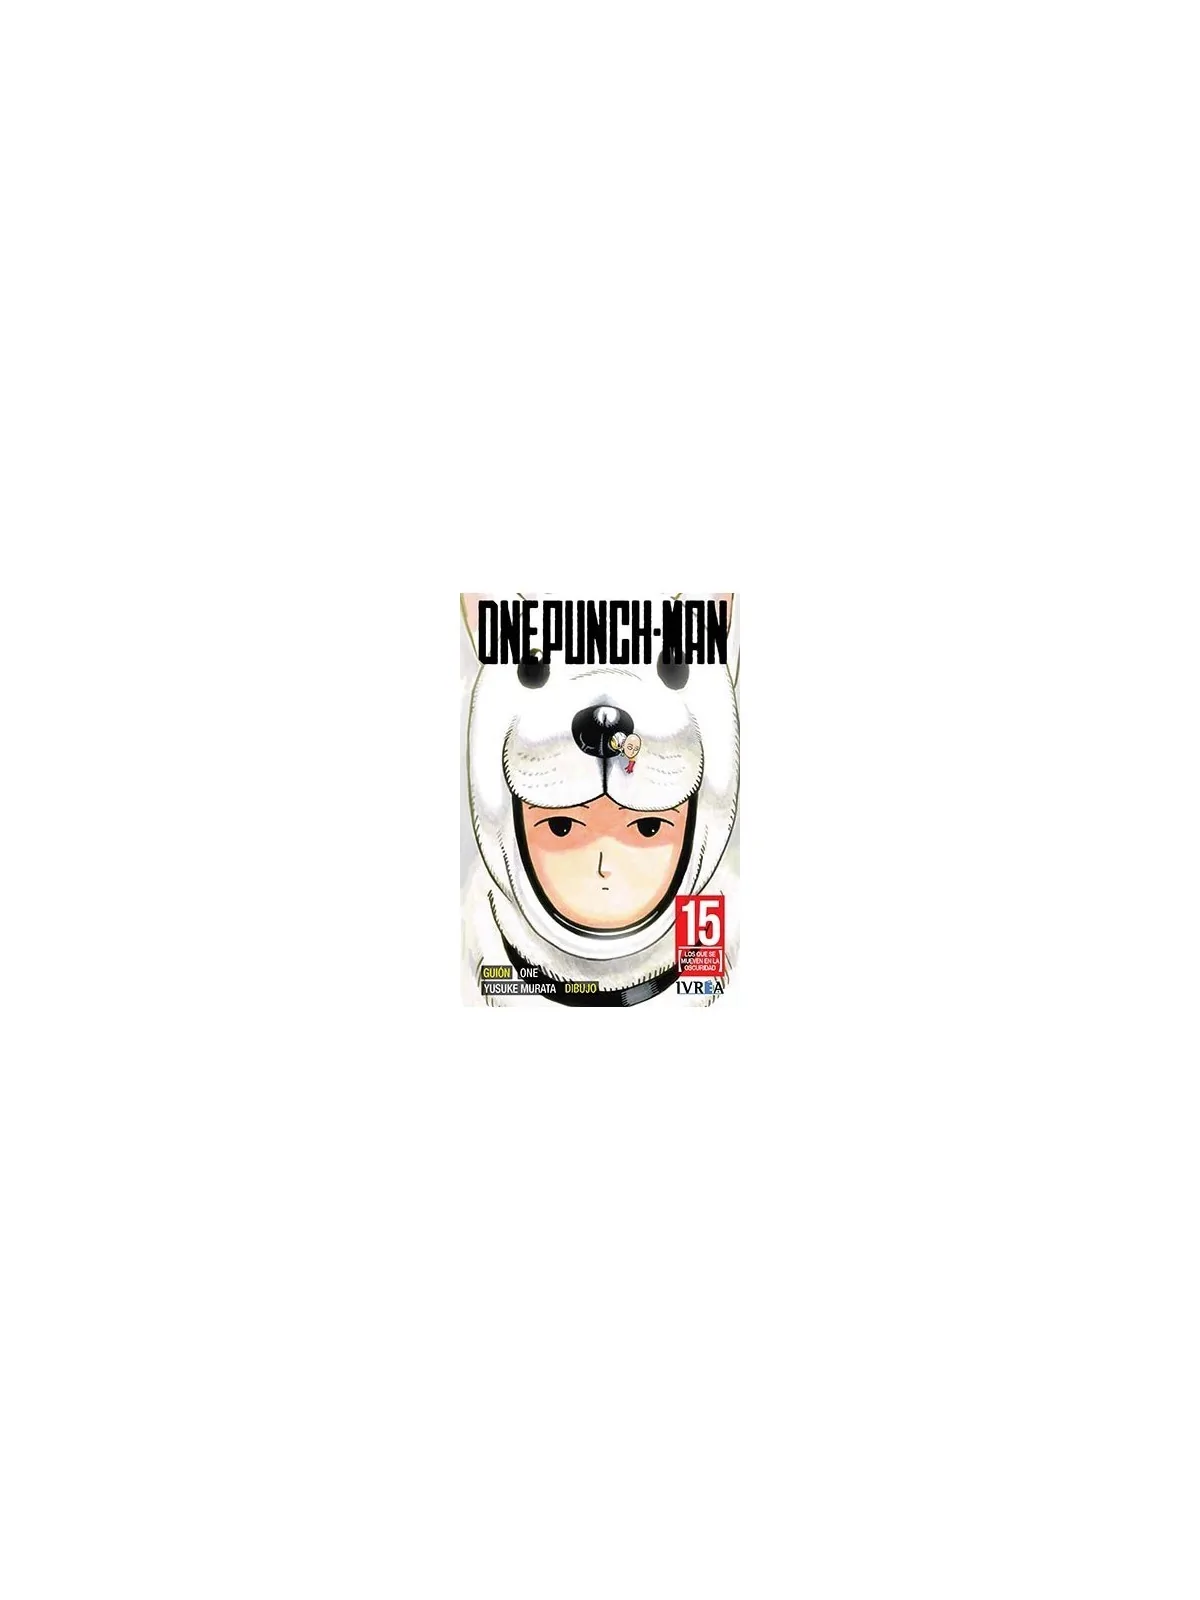 Comprar One Punch-man barato al mejor precio 7,60 € de Ivrea